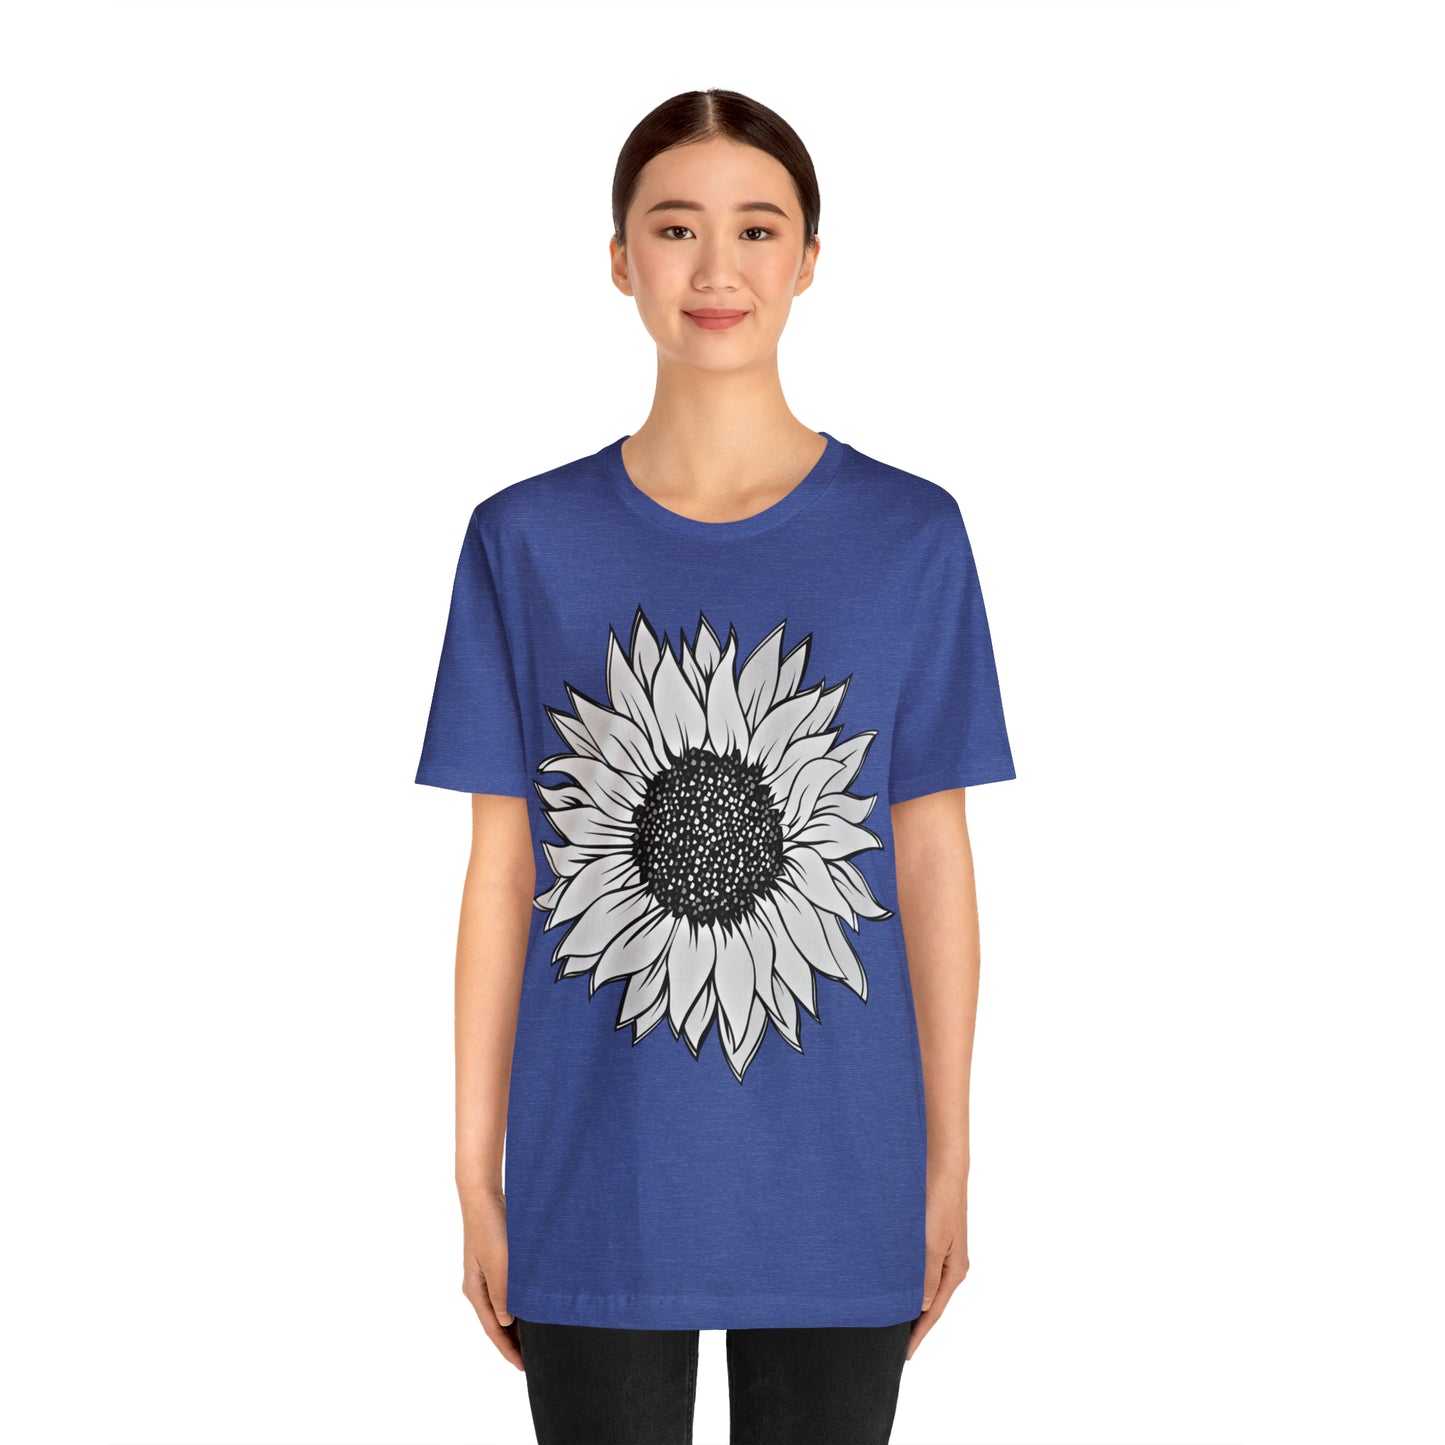 Sunflower Shirt, Floral Tee Shirt, Flower Shirt, Garden Shirt, Womens Fall Summer Shirt Sunshine Tee, Gift for Gardener, Nature love